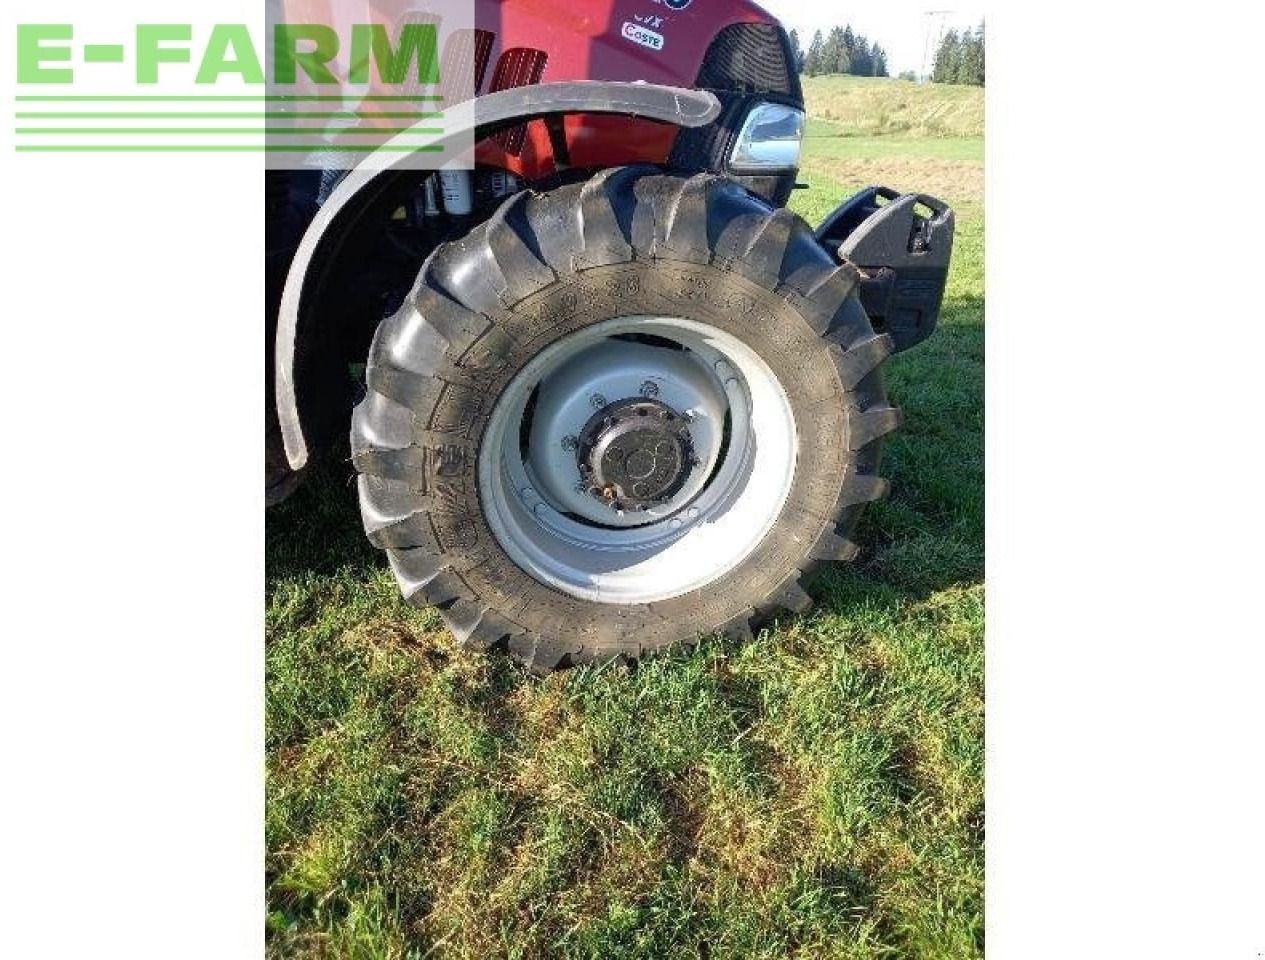 Farm tractor Case-IH marque case ih: picture 7